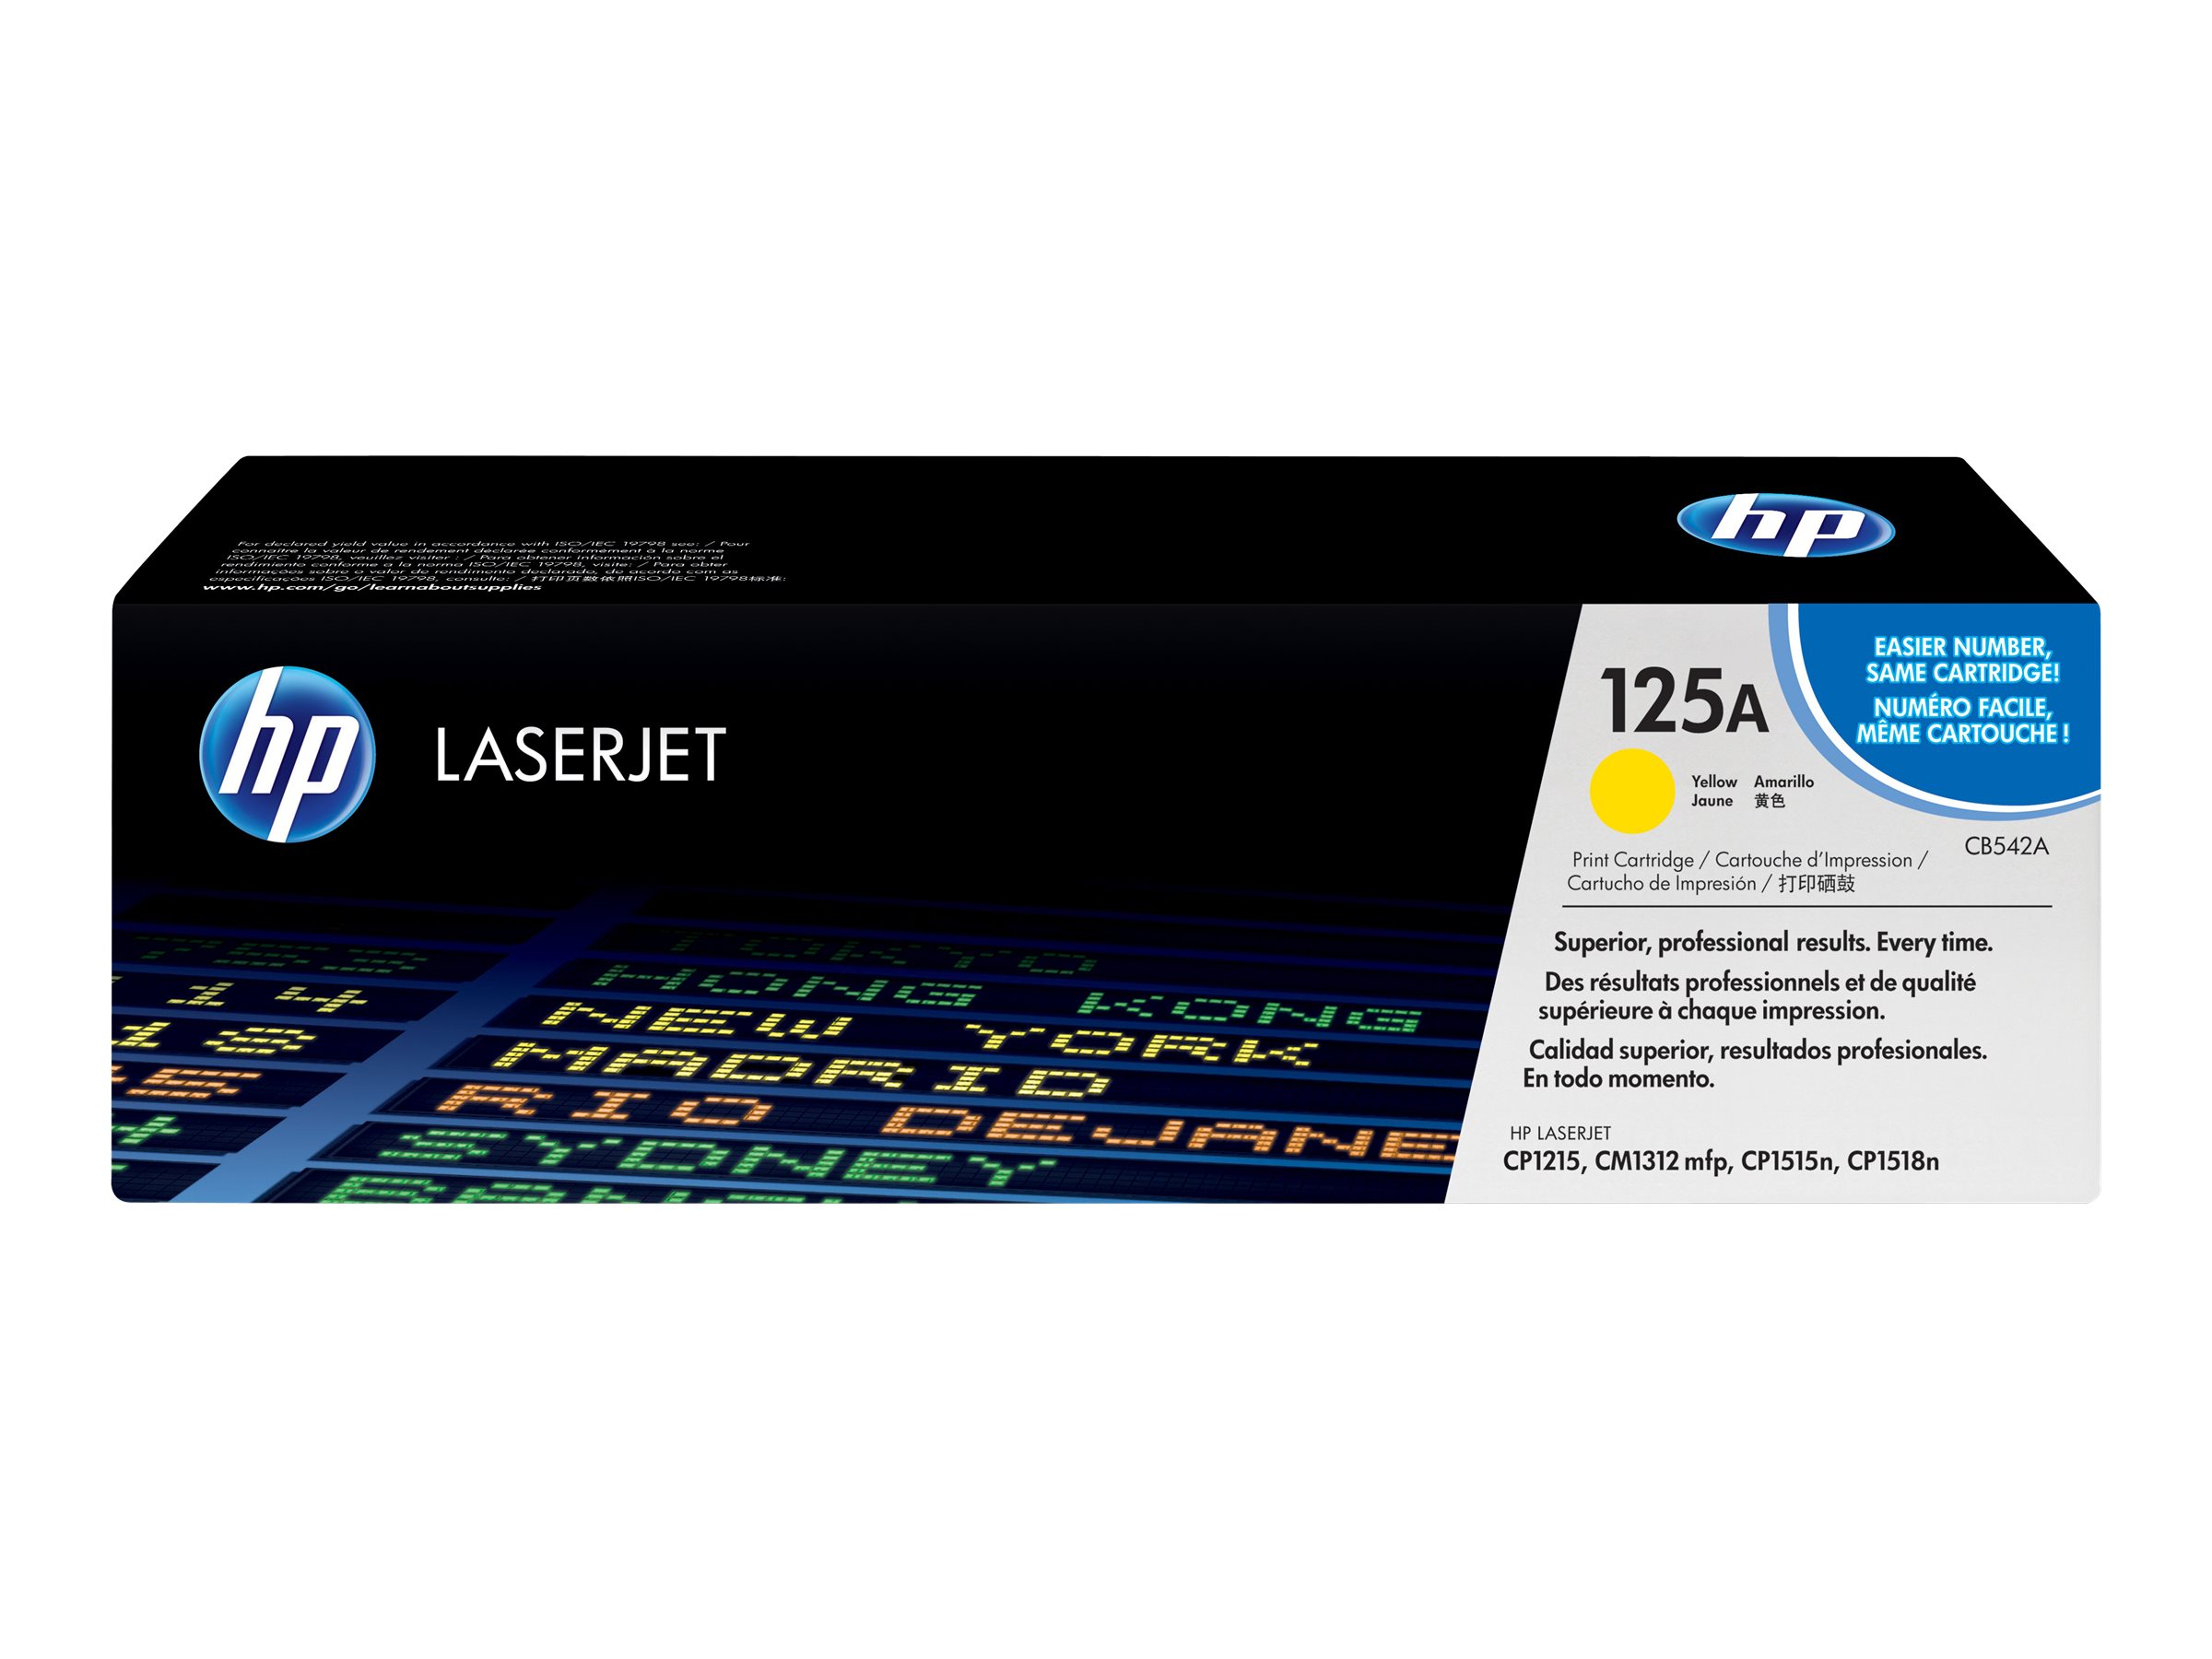 Toner CB542A / gelb / bis zu 1400 Seiten / für HP Color LaserJet CP 1215/ CP 1515/ CP 1518